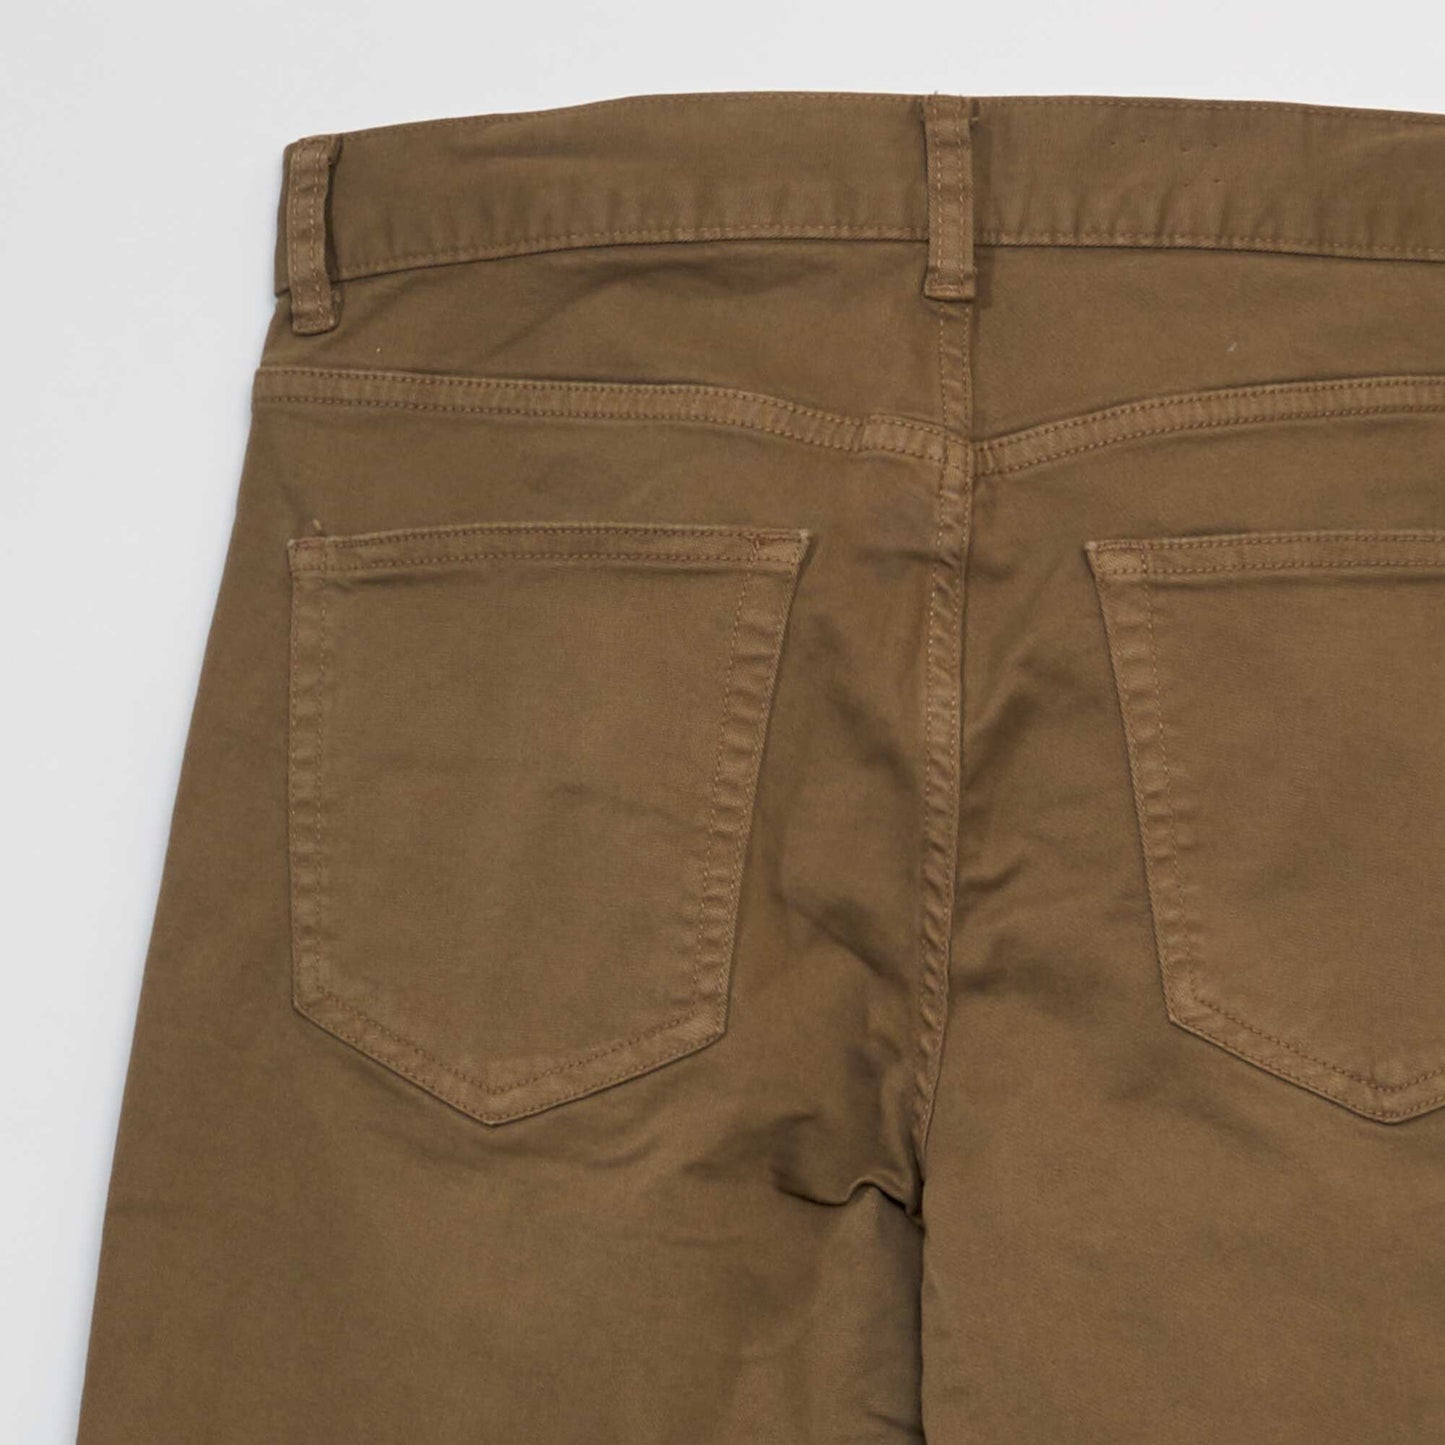 Pantalon slim 5 poches - L32 marron